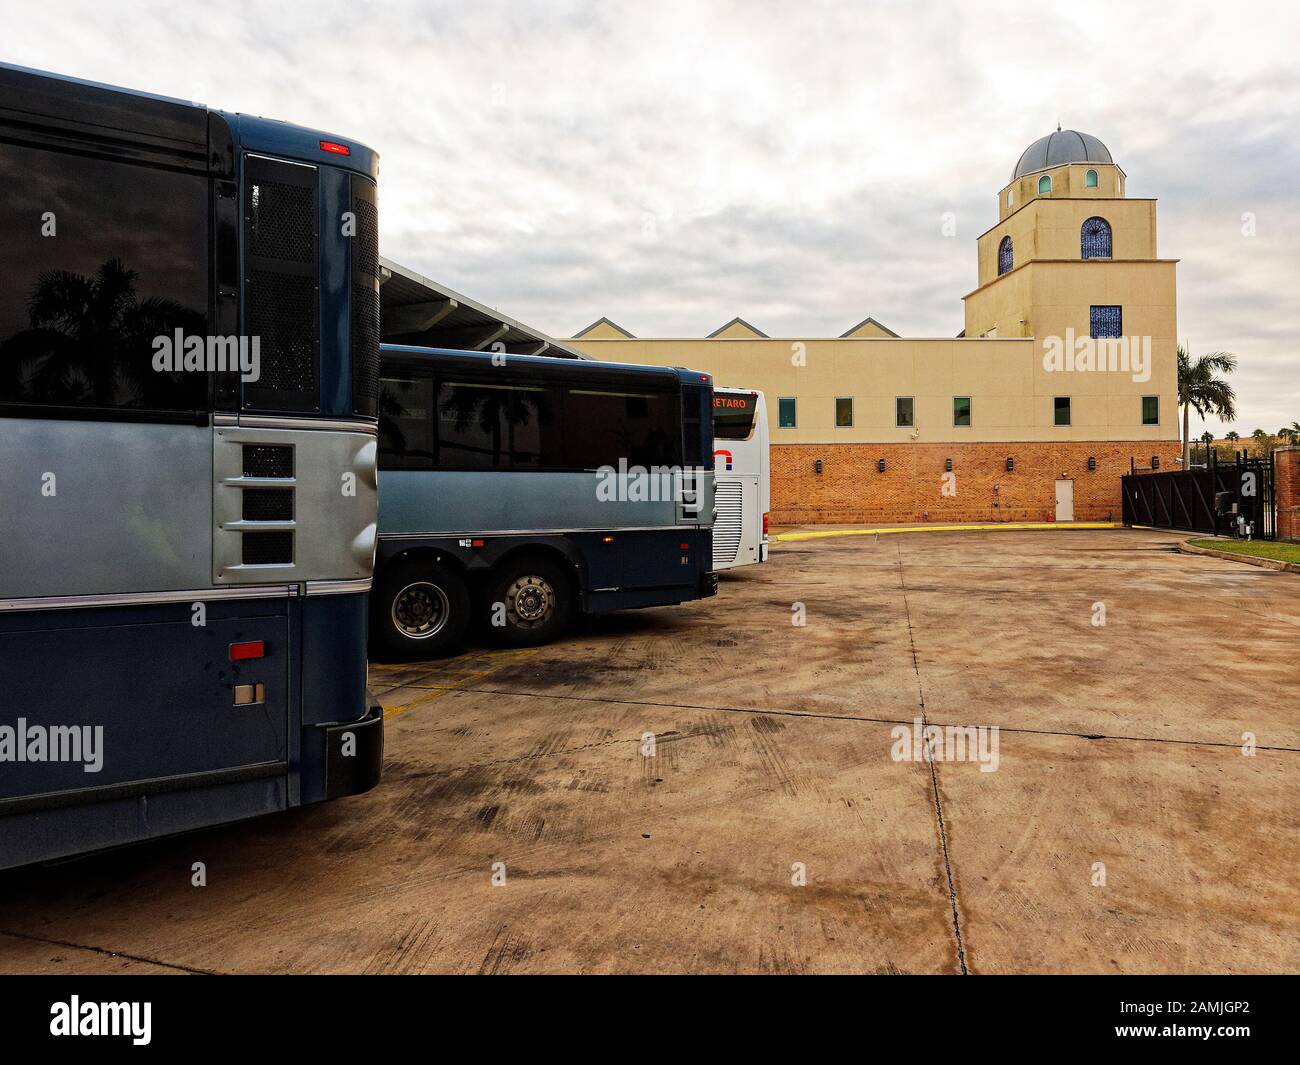 Brownsville, Texas, USA il terminal degli autobus di la Plaza a Brownsville serve la Rio Grand Valley, dove gli immigrati clandestini possono salire sugli autobus e riunirsi con i parenti che vivono negli Stati Uniti. Foto Stock